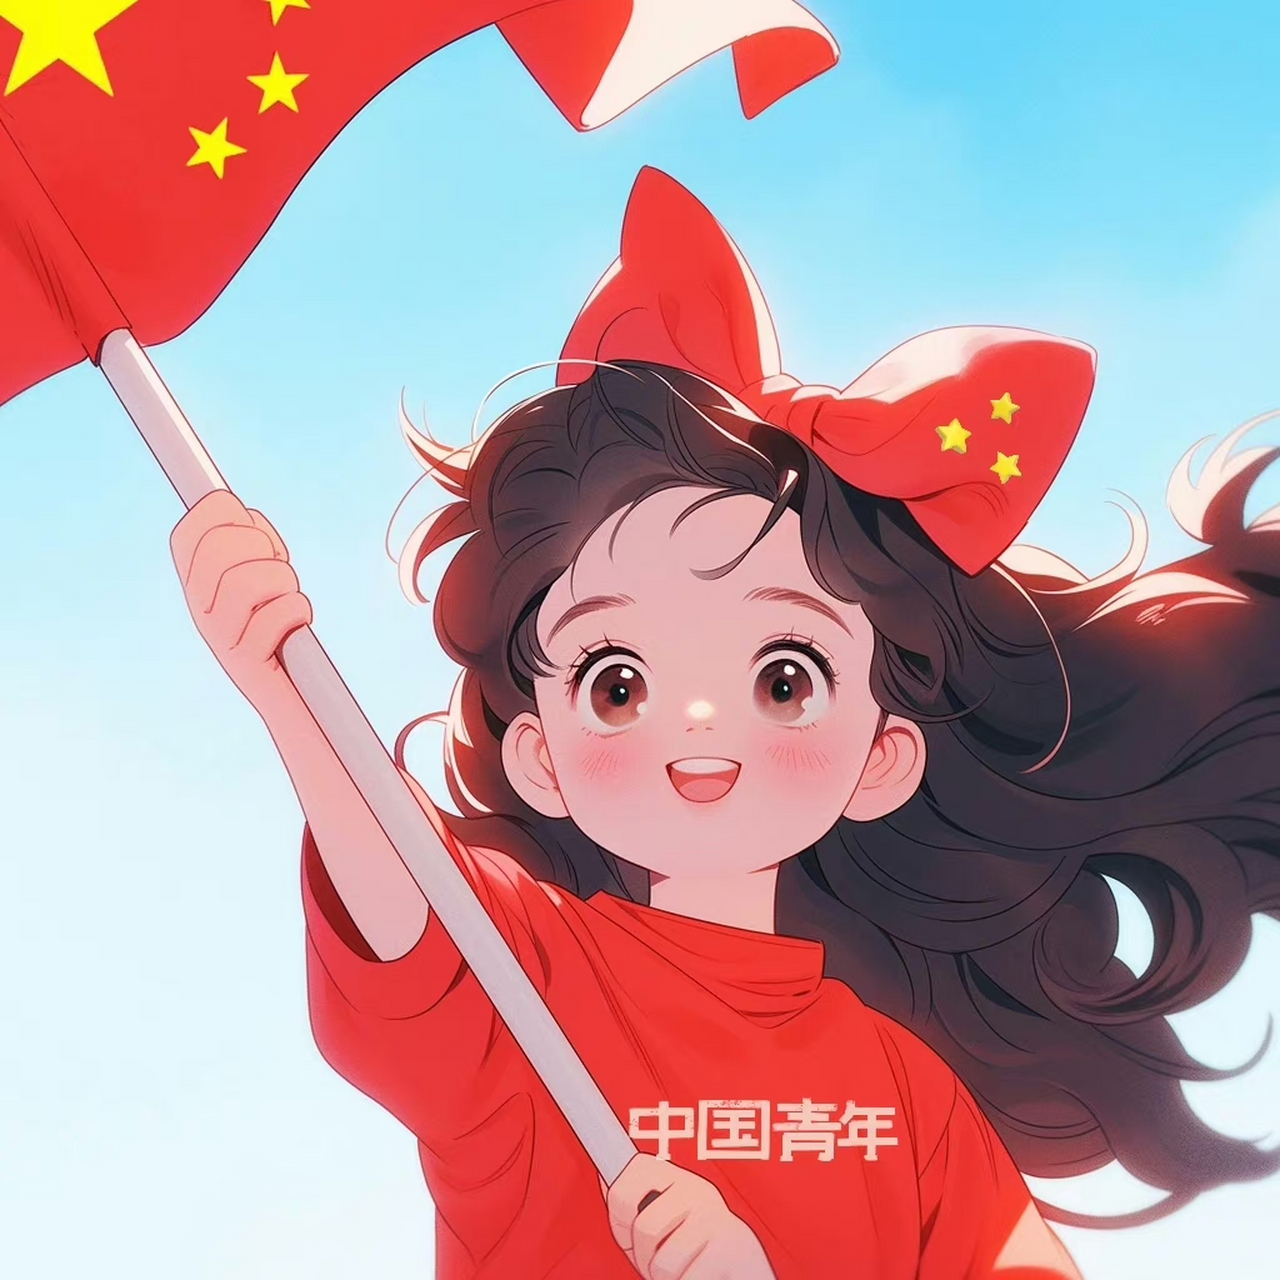 中国红旗背景头像图片